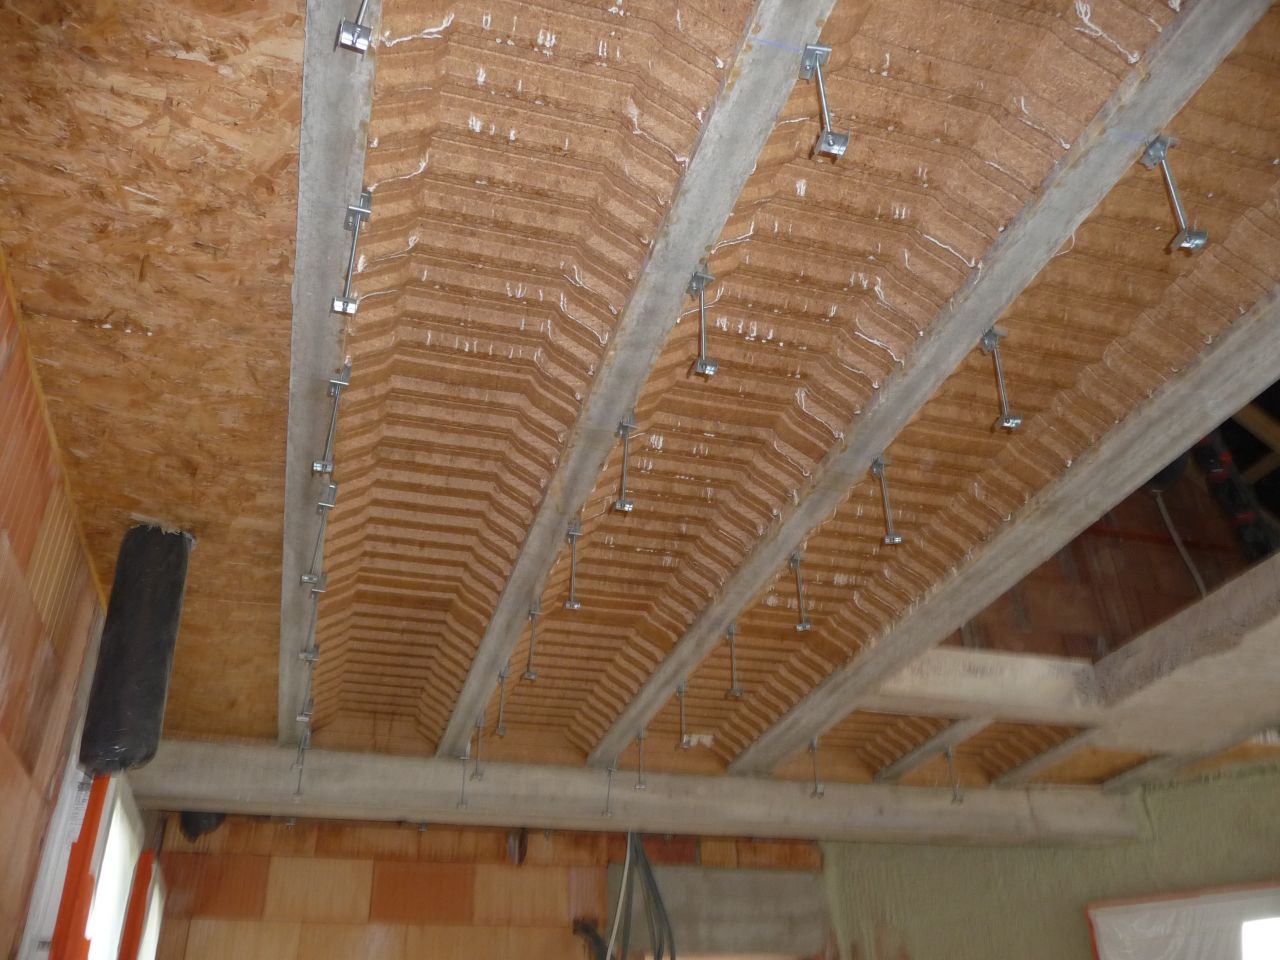 Prparation des supports de plafond type placostyle